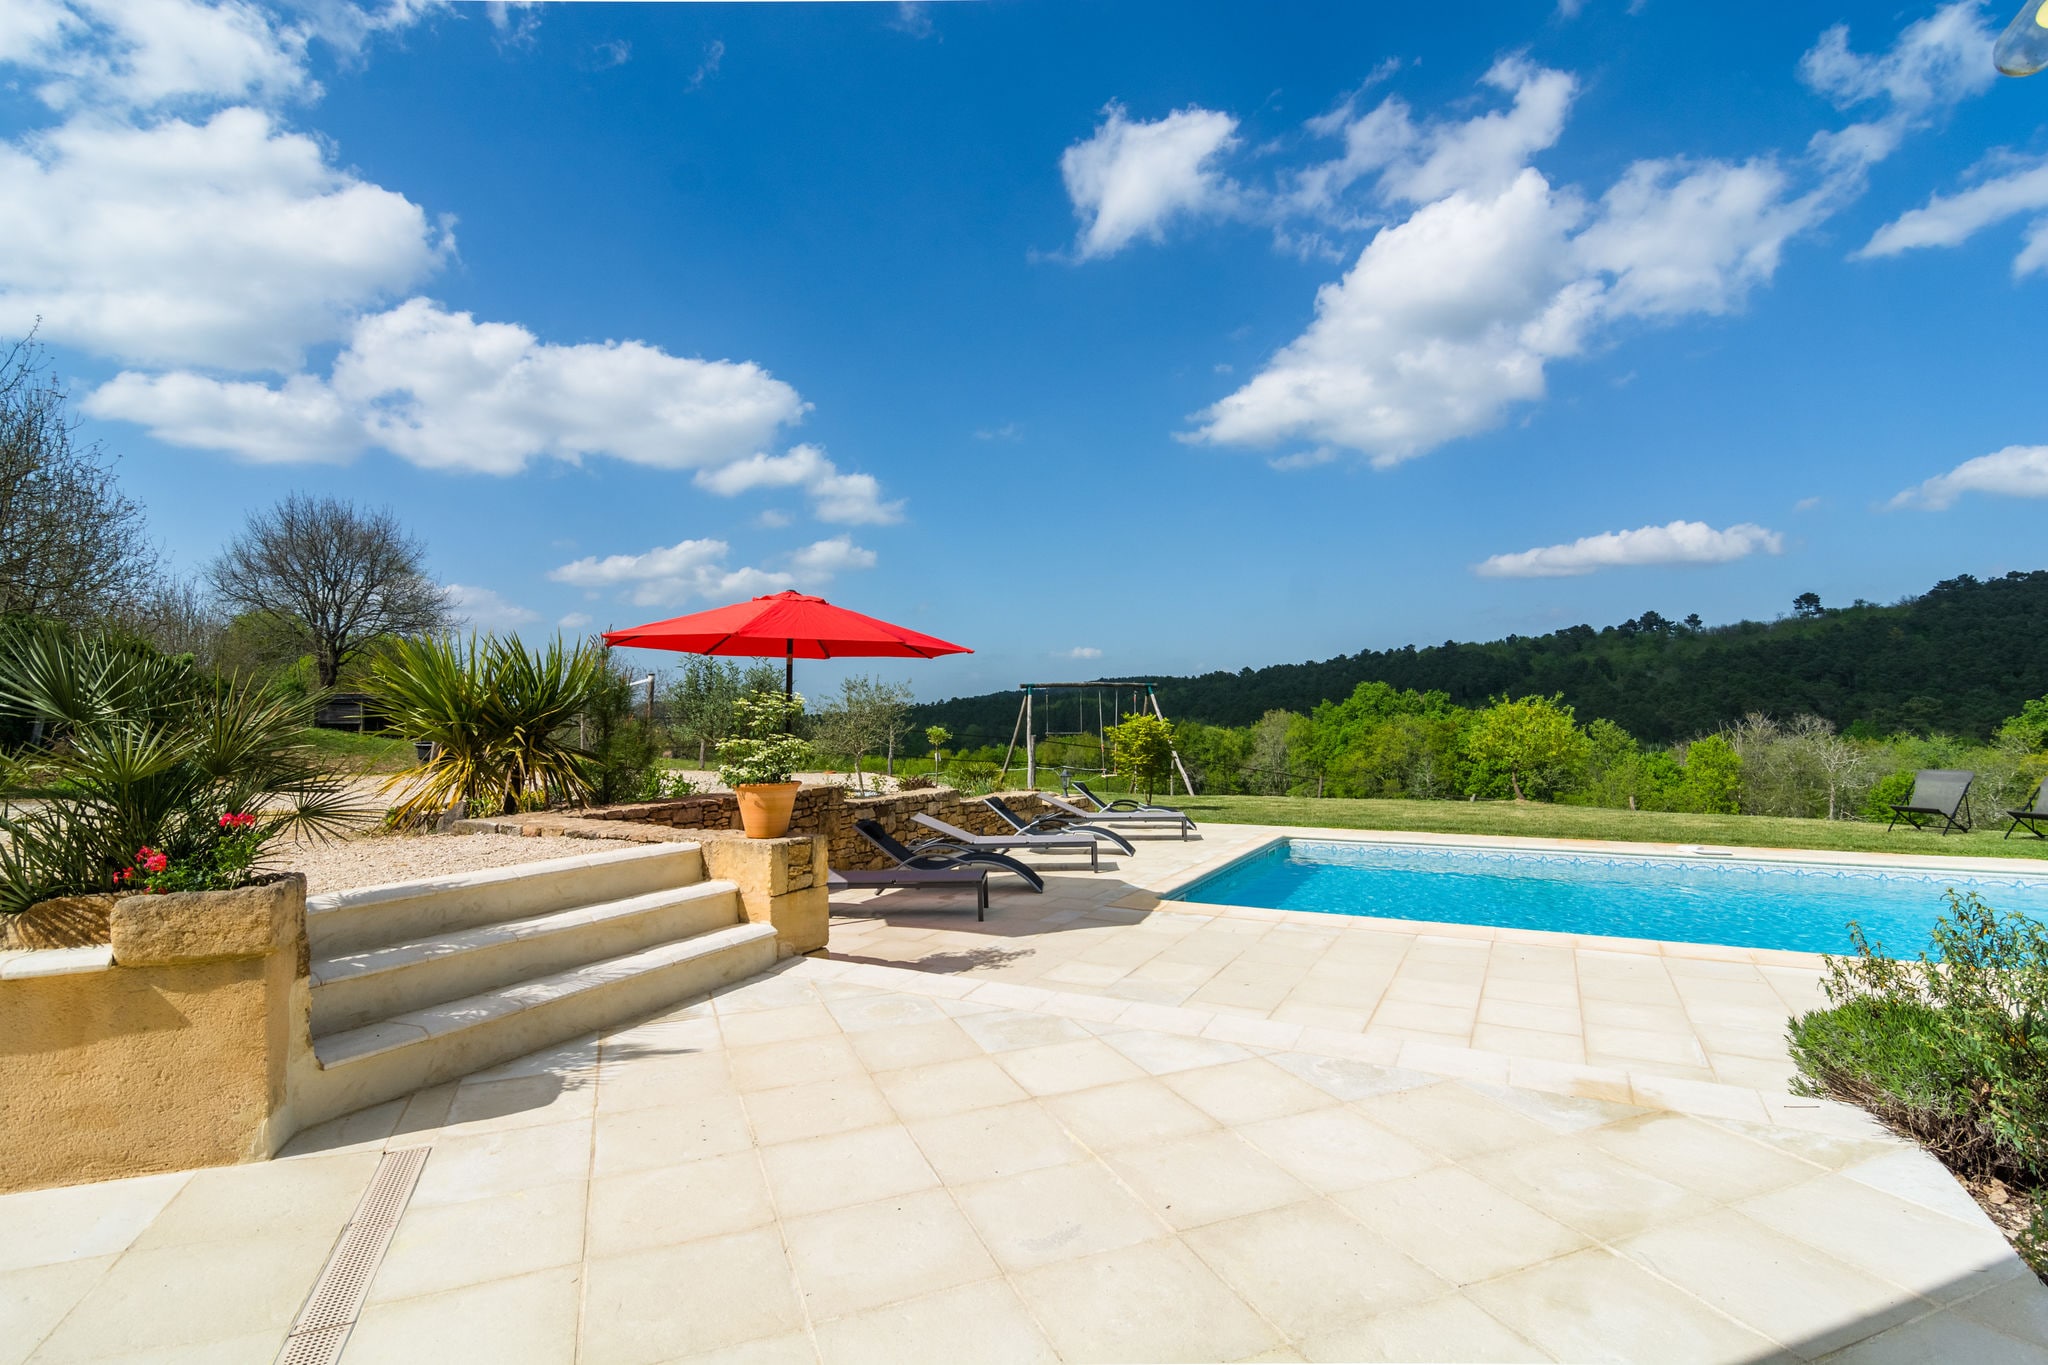 Maison de vacances paisible à Mazeyrolles avec piscine